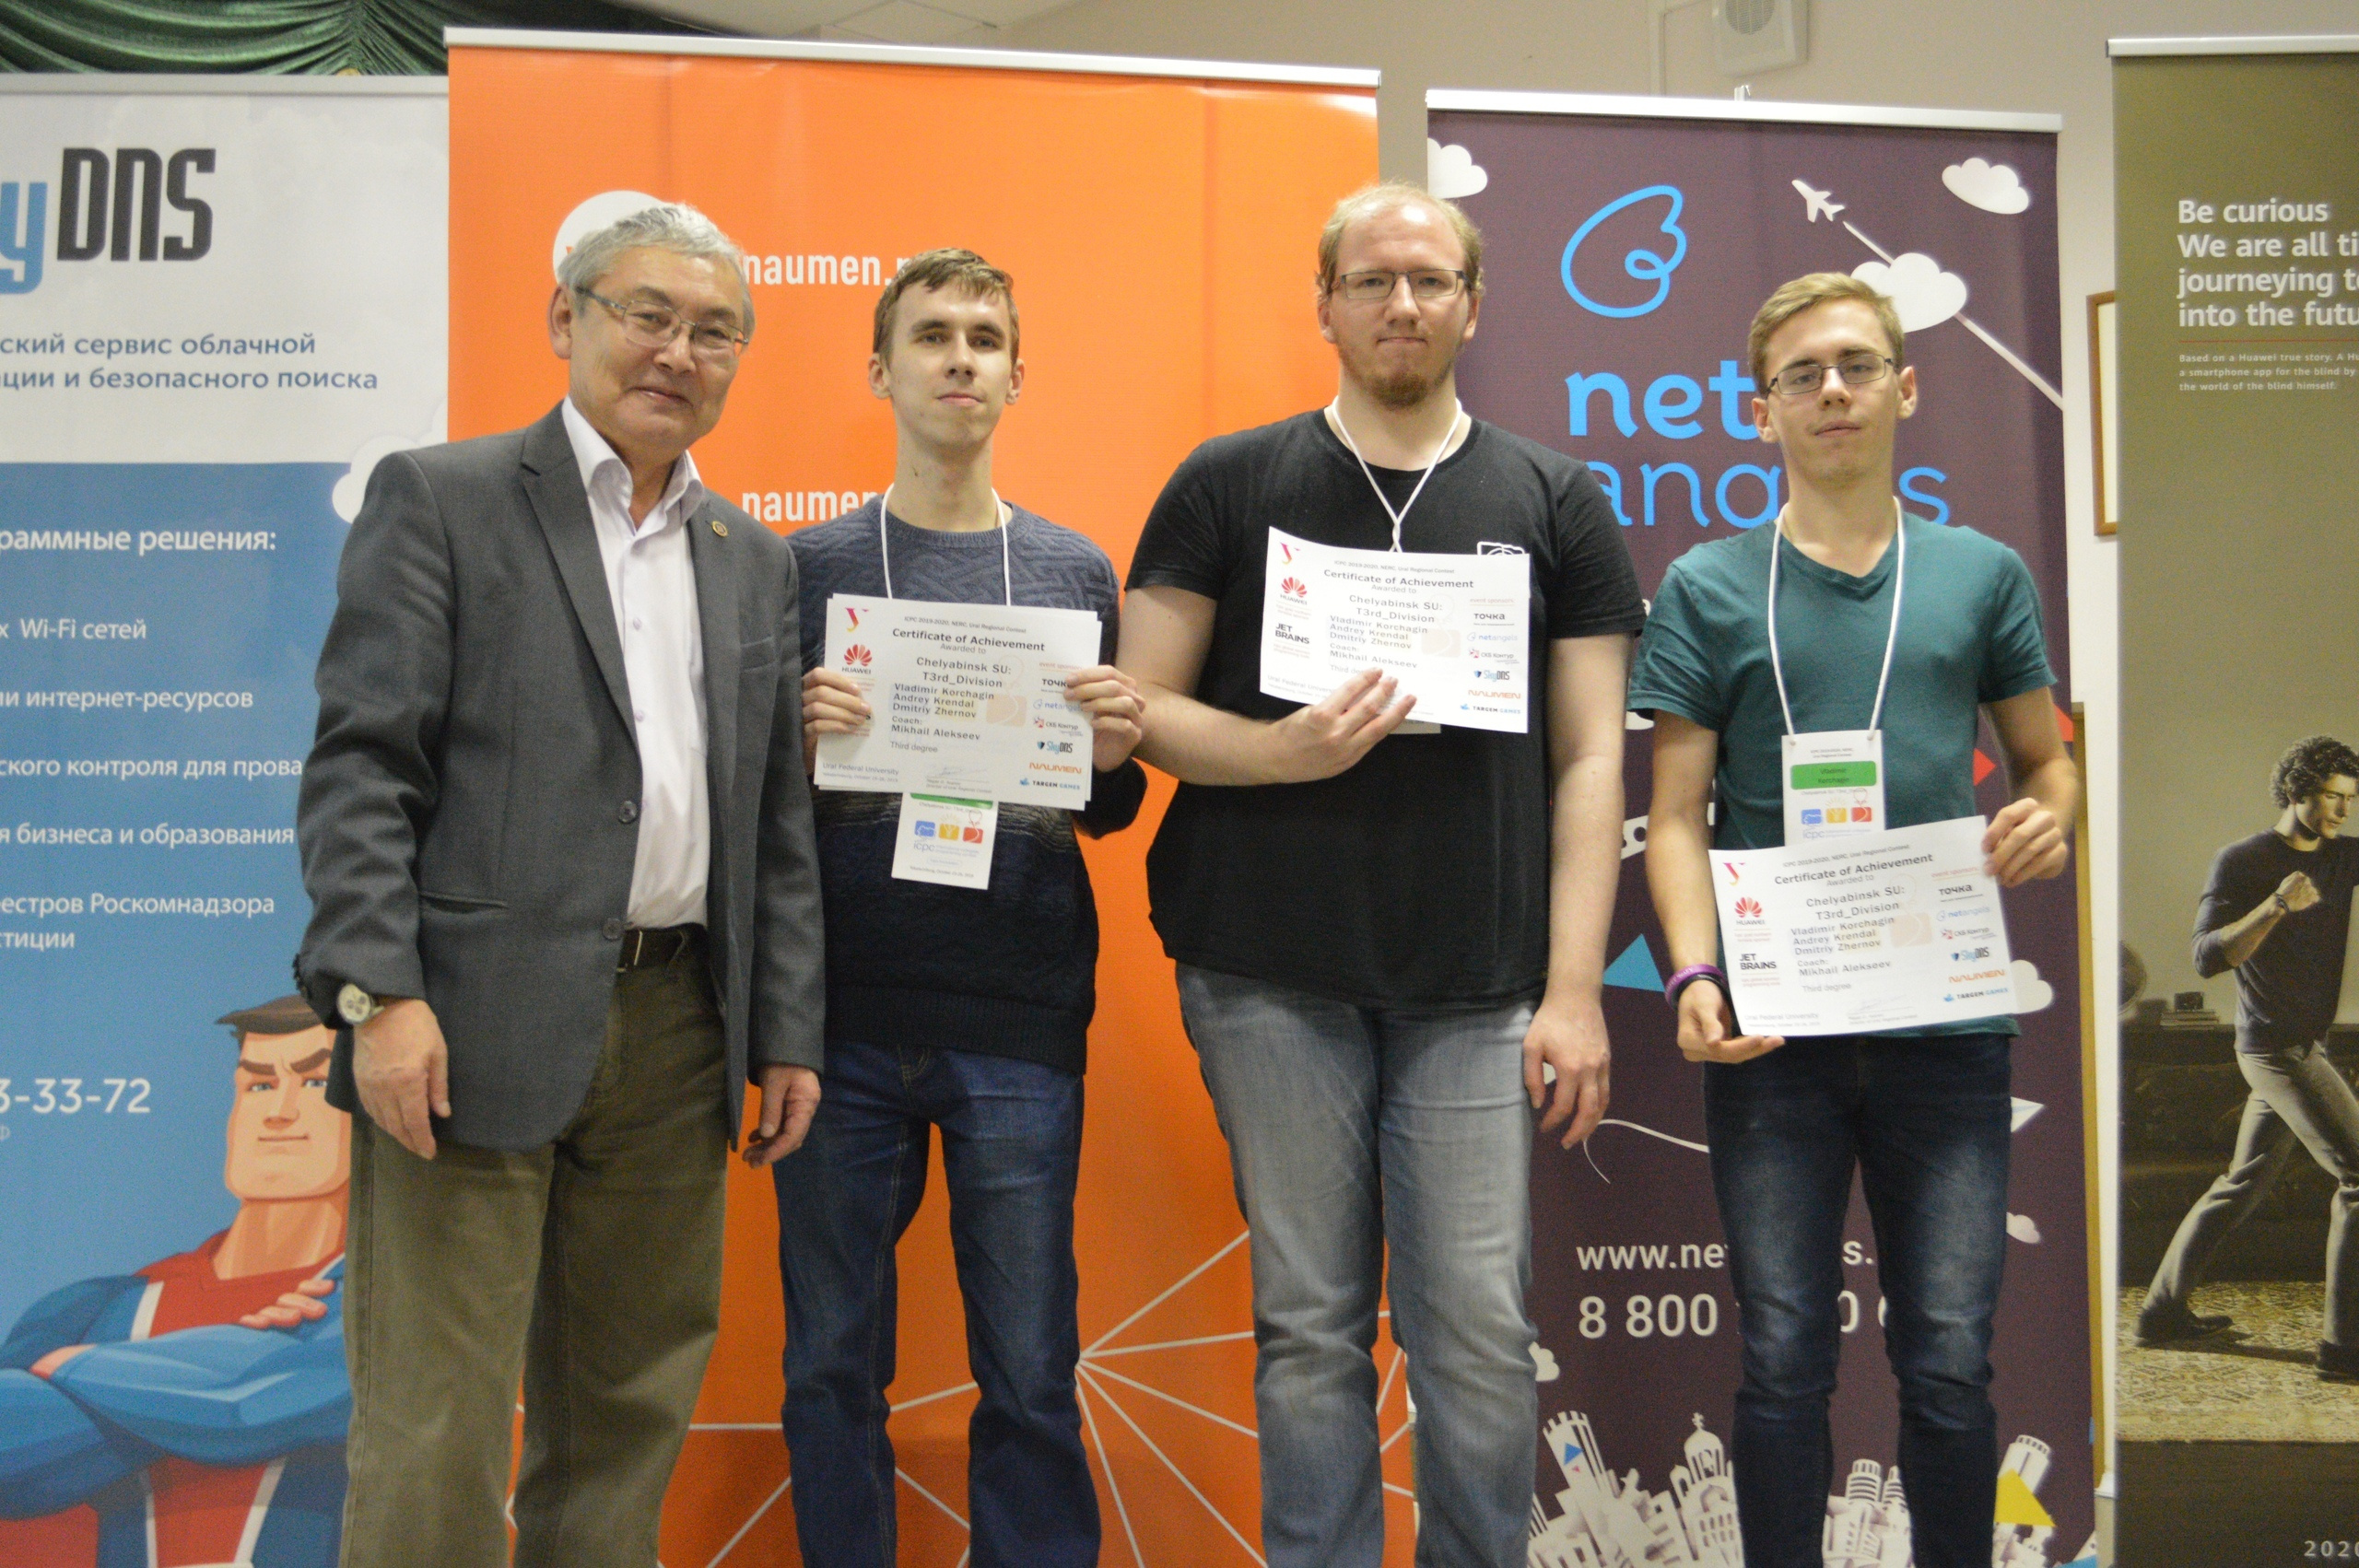 Дмитрий (второй слева) на четвертьфинале студенческого чемпионата мира по спортивному программированию